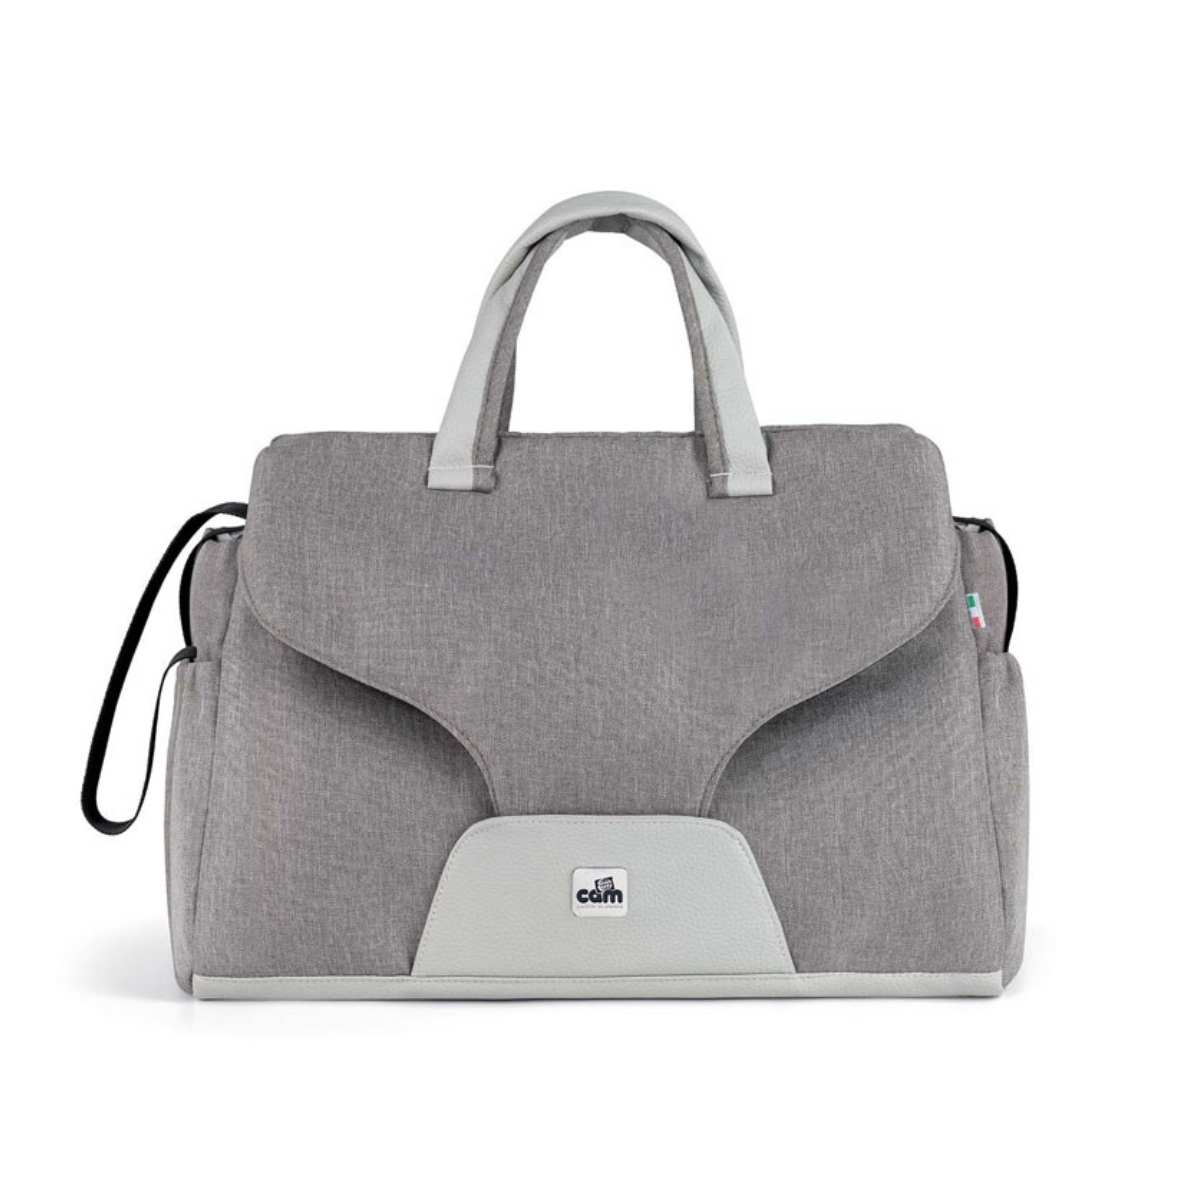 Cam - Celine Changing Bag - Grey